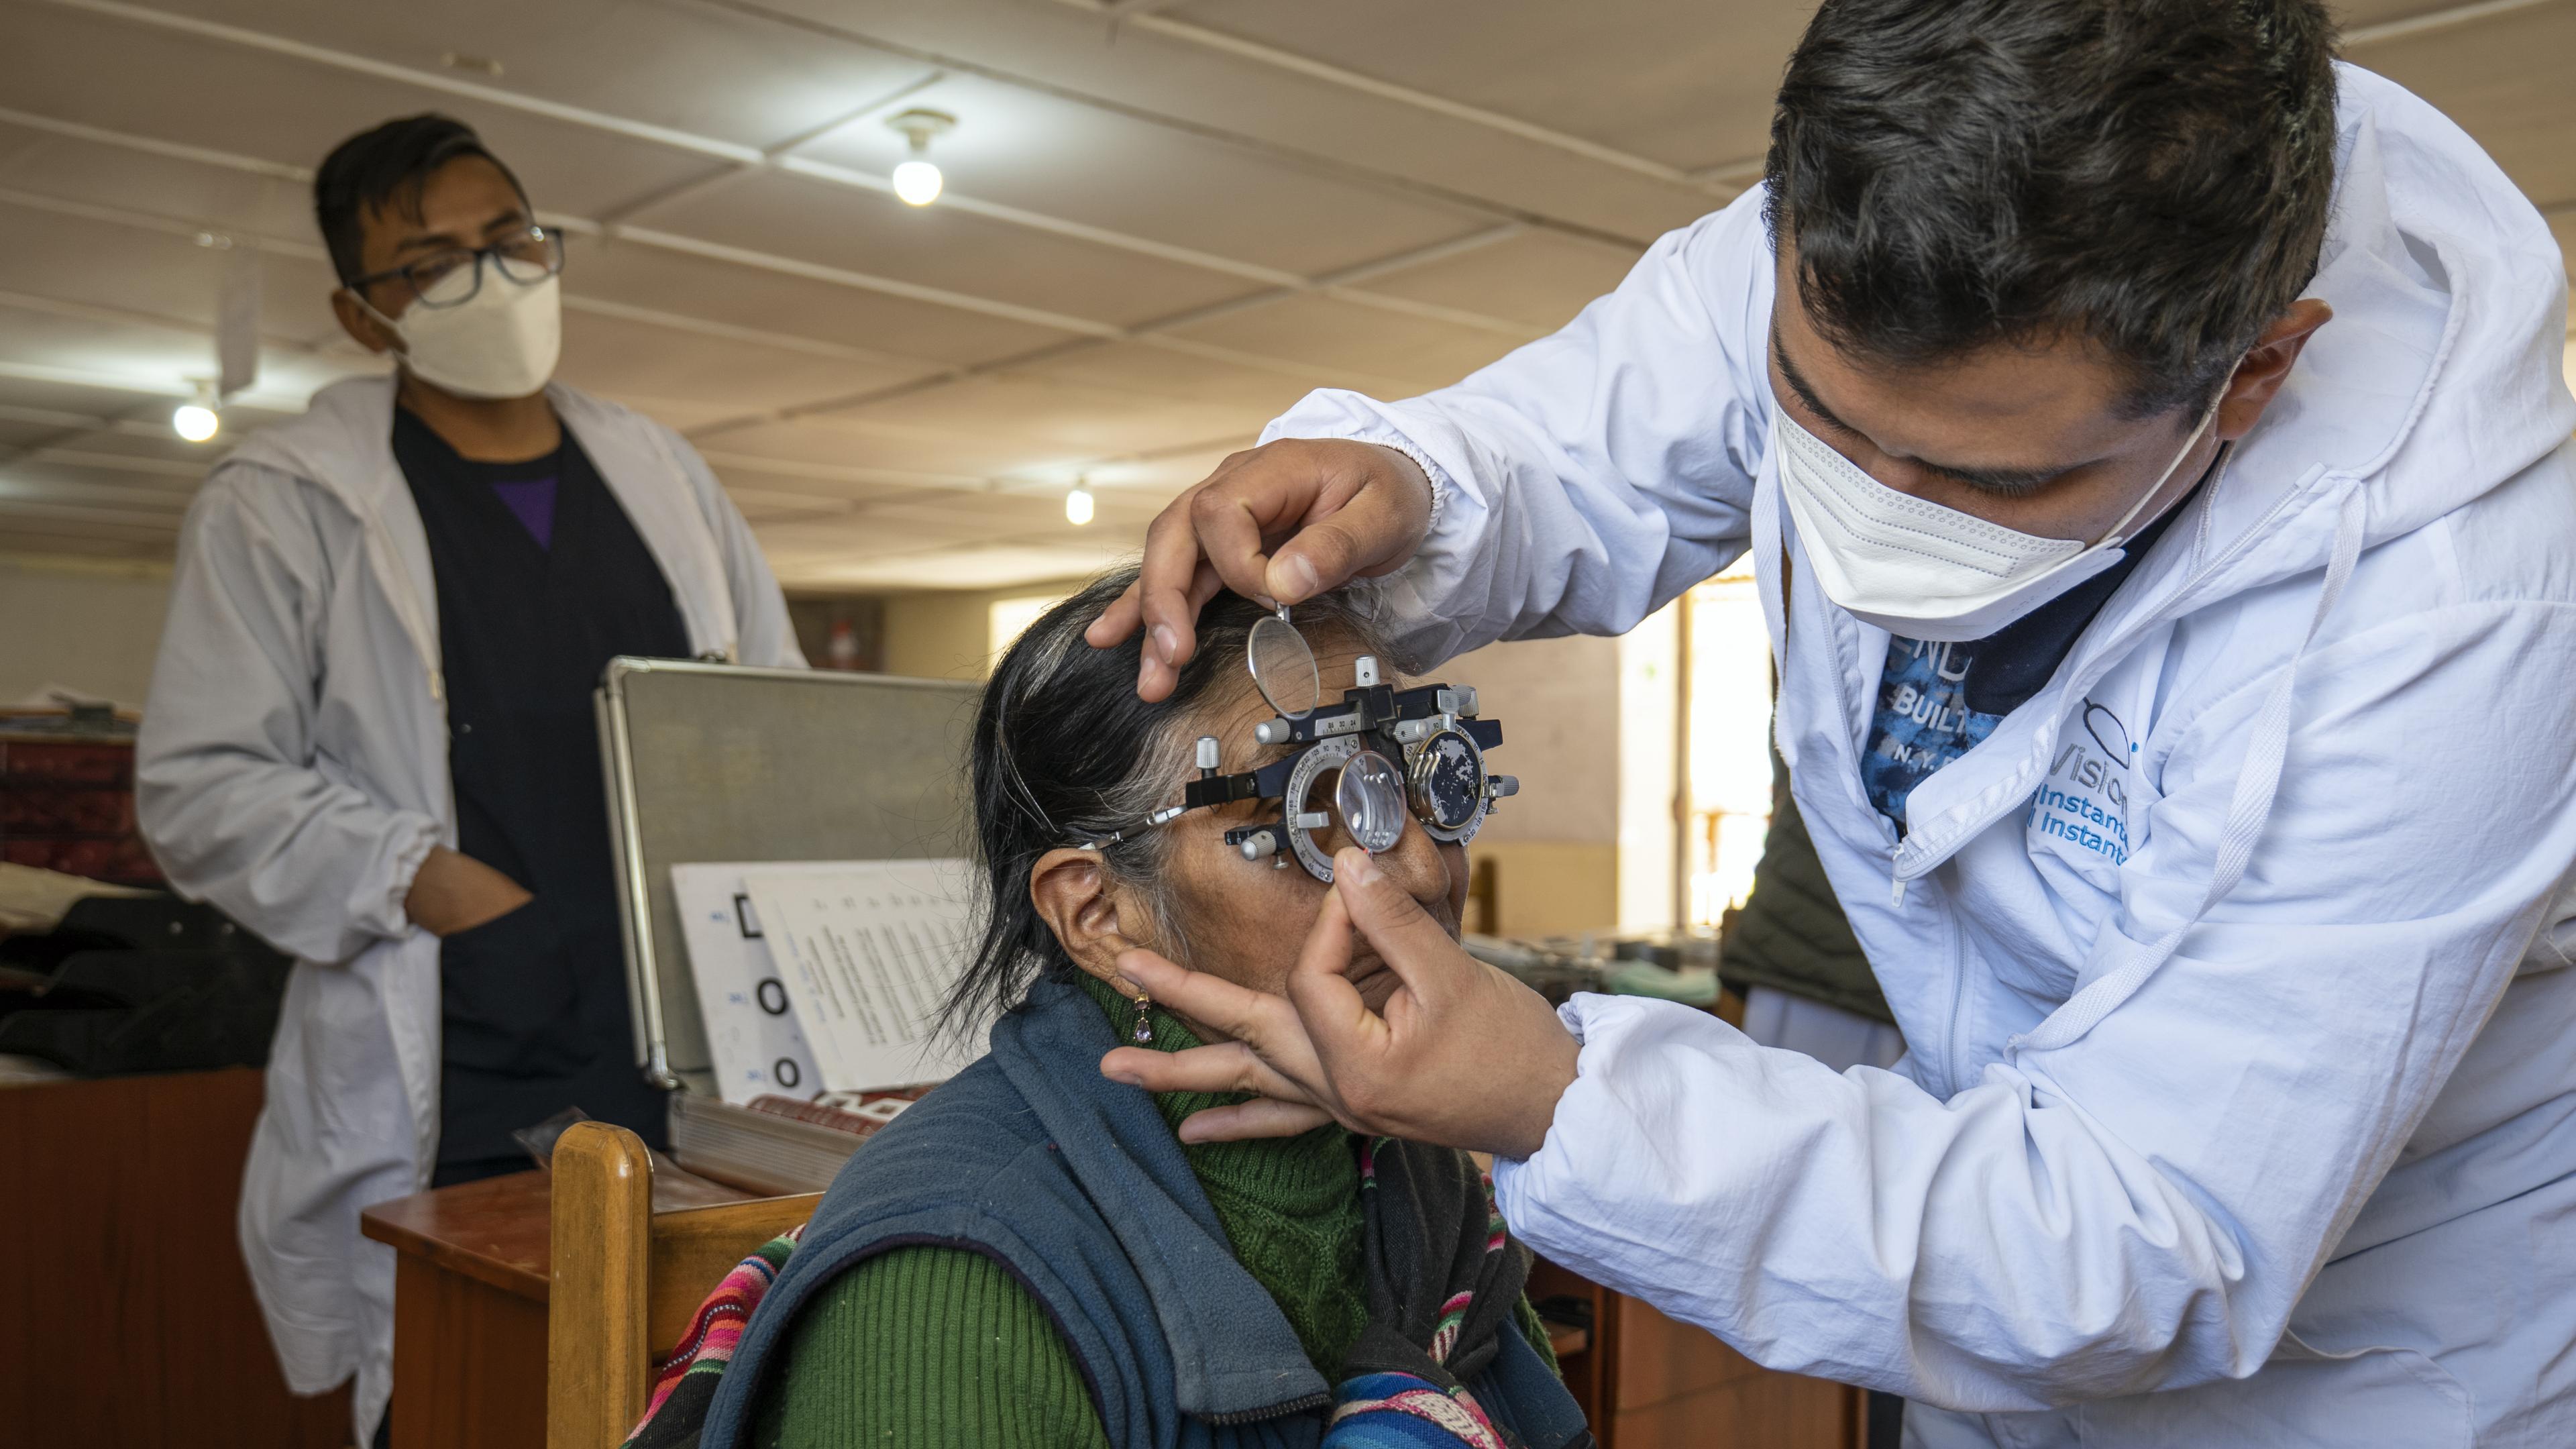 Mitarbeiter von GoodVision Peru setzt Linse in Probelinsenrahmen, Patientin blickt hindurch